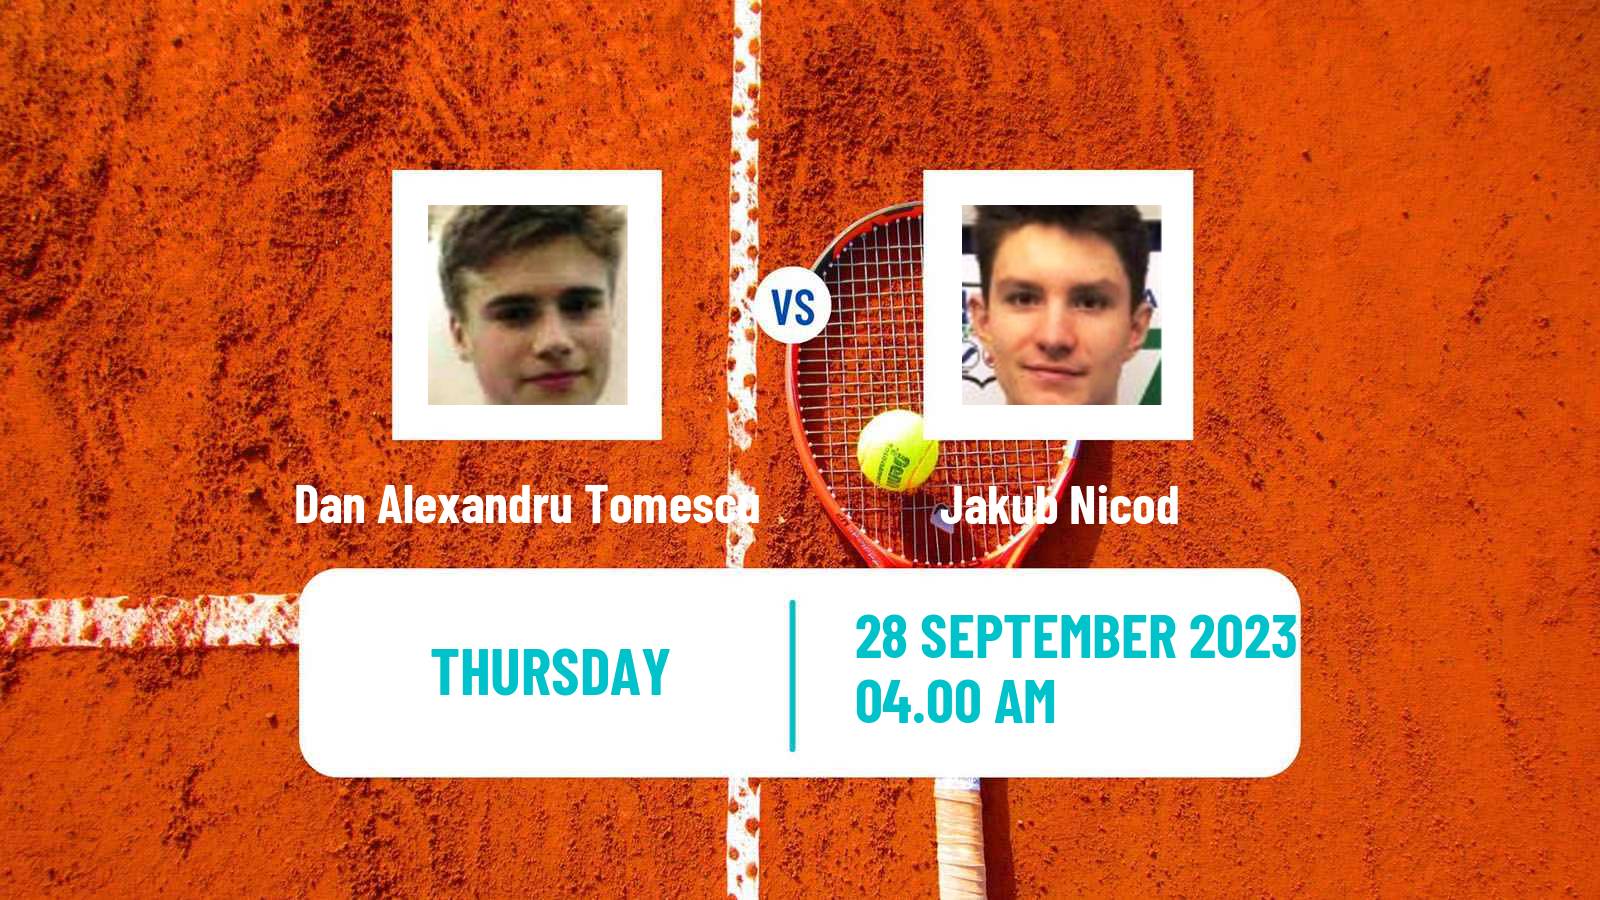 Tennis ITF M15 Arad Men Dan Alexandru Tomescu - Jakub Nicod